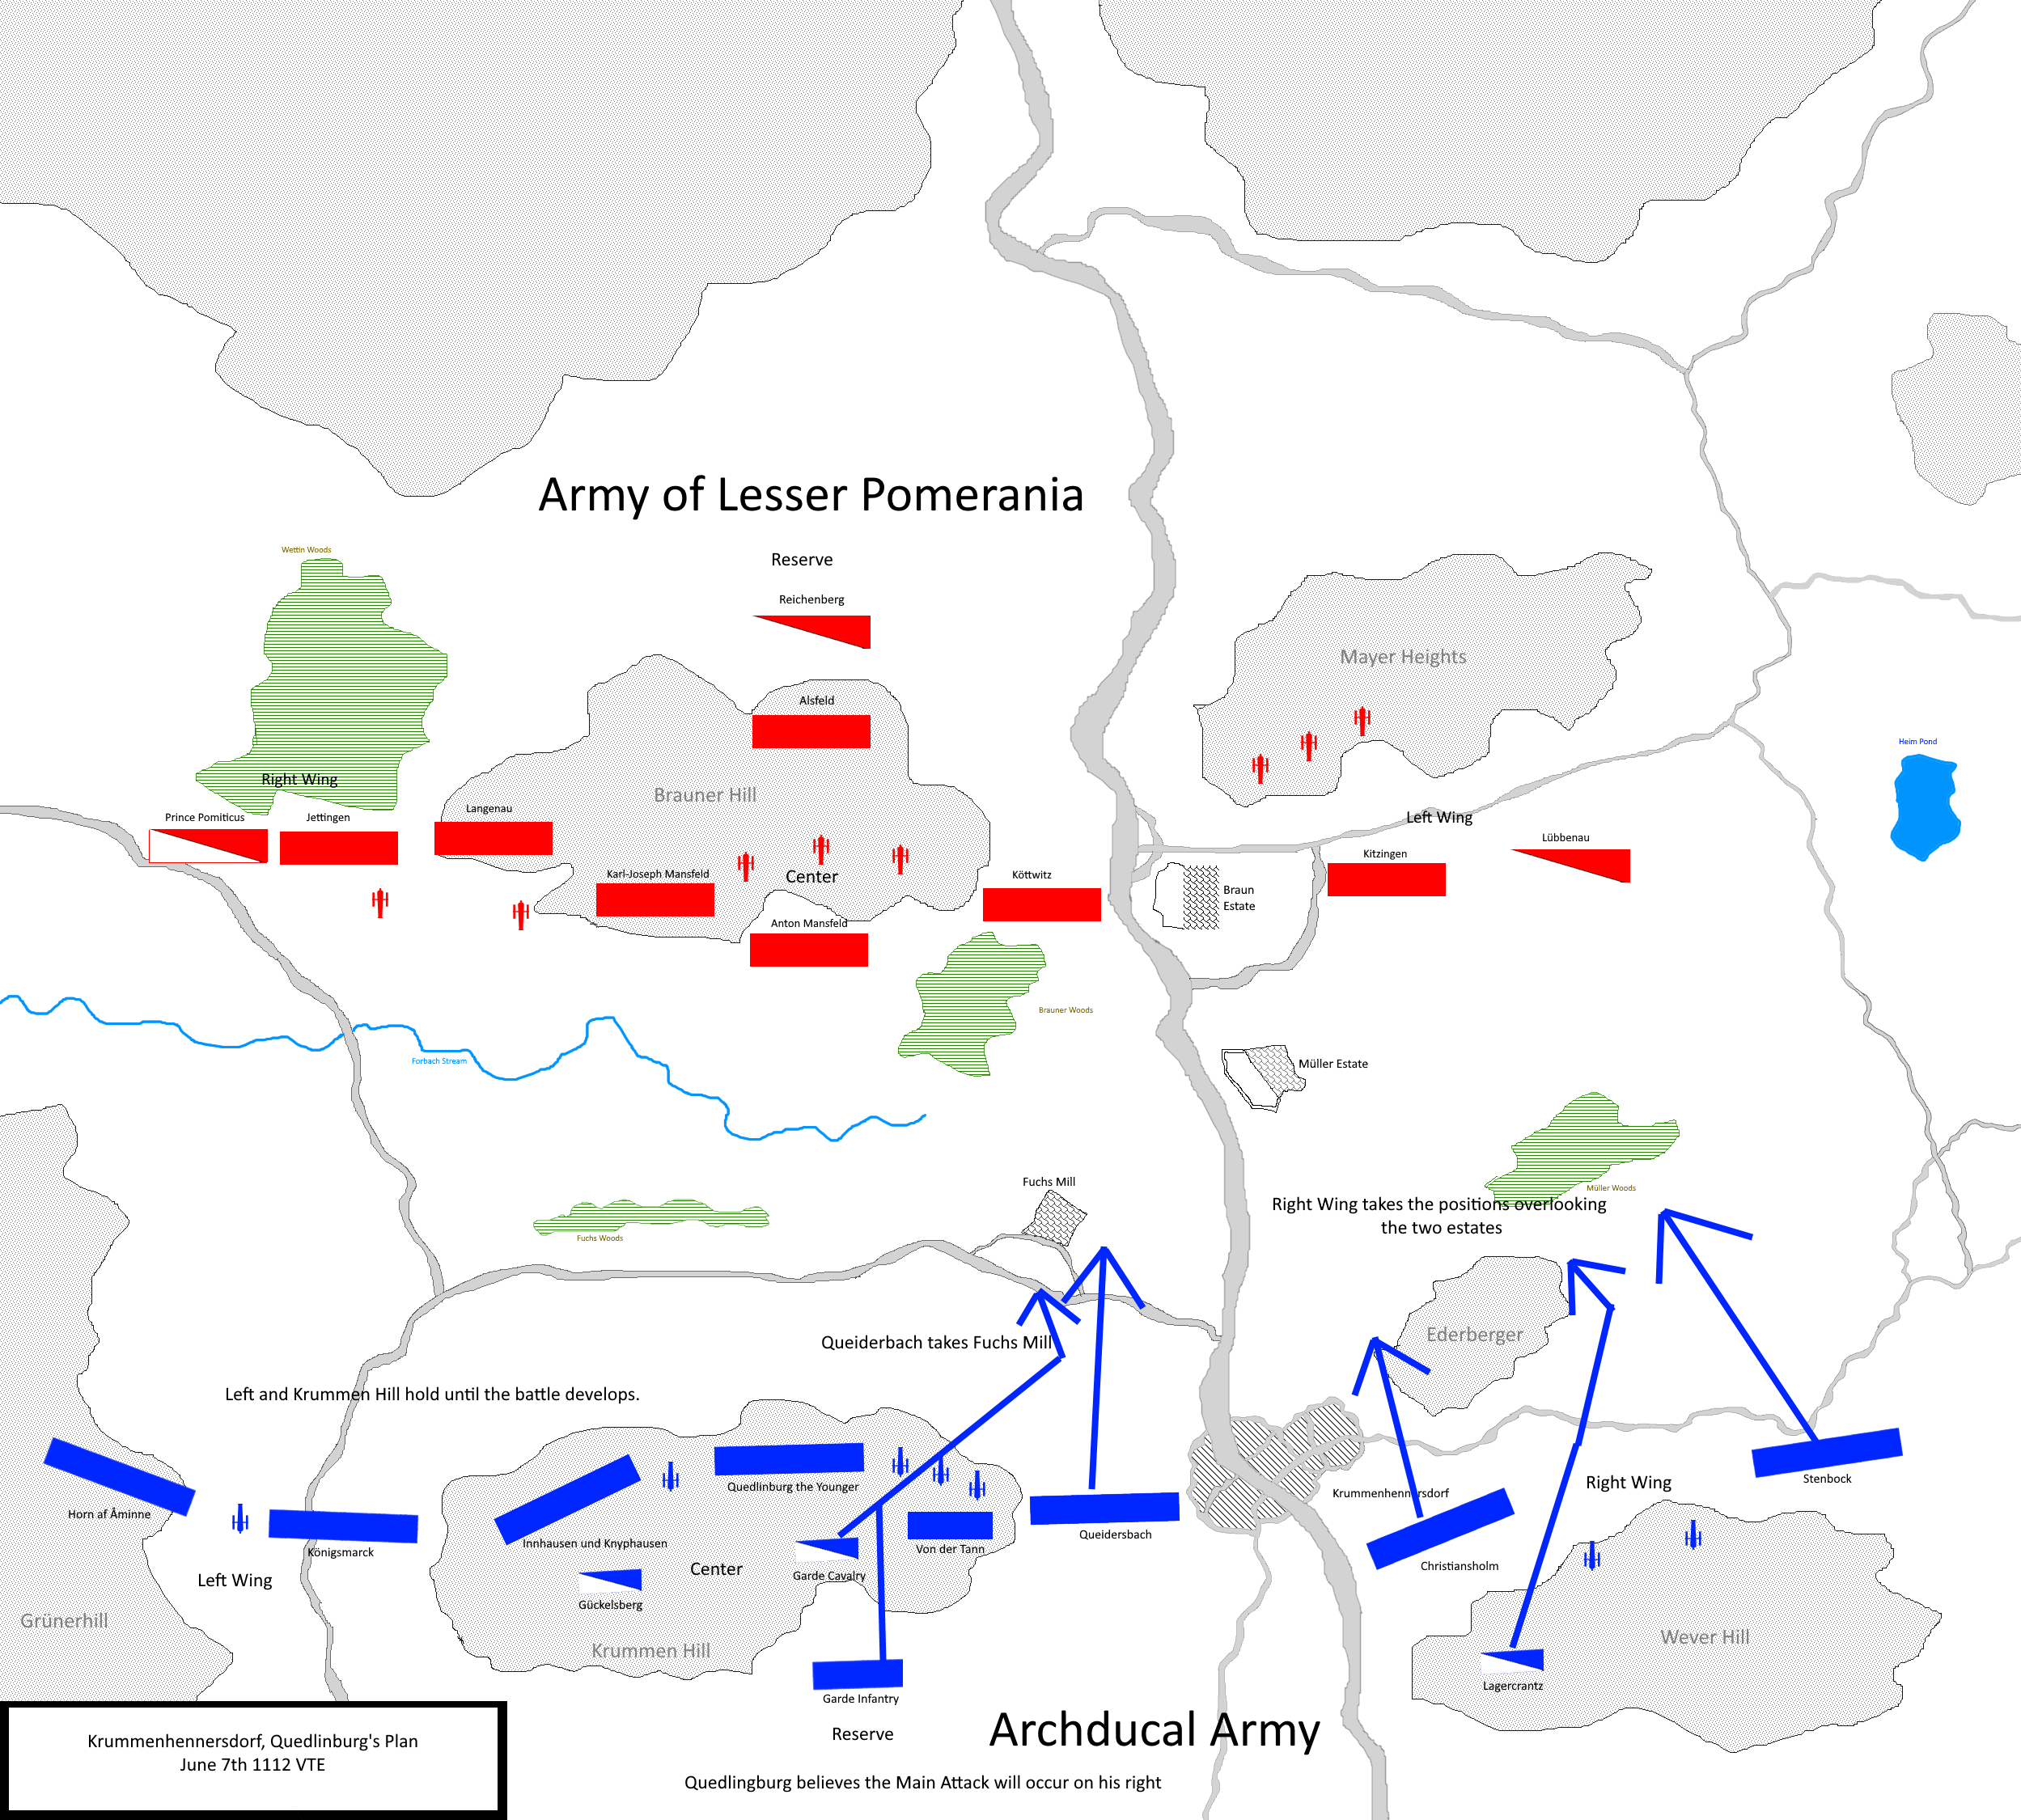 Quedlinburg's Plan